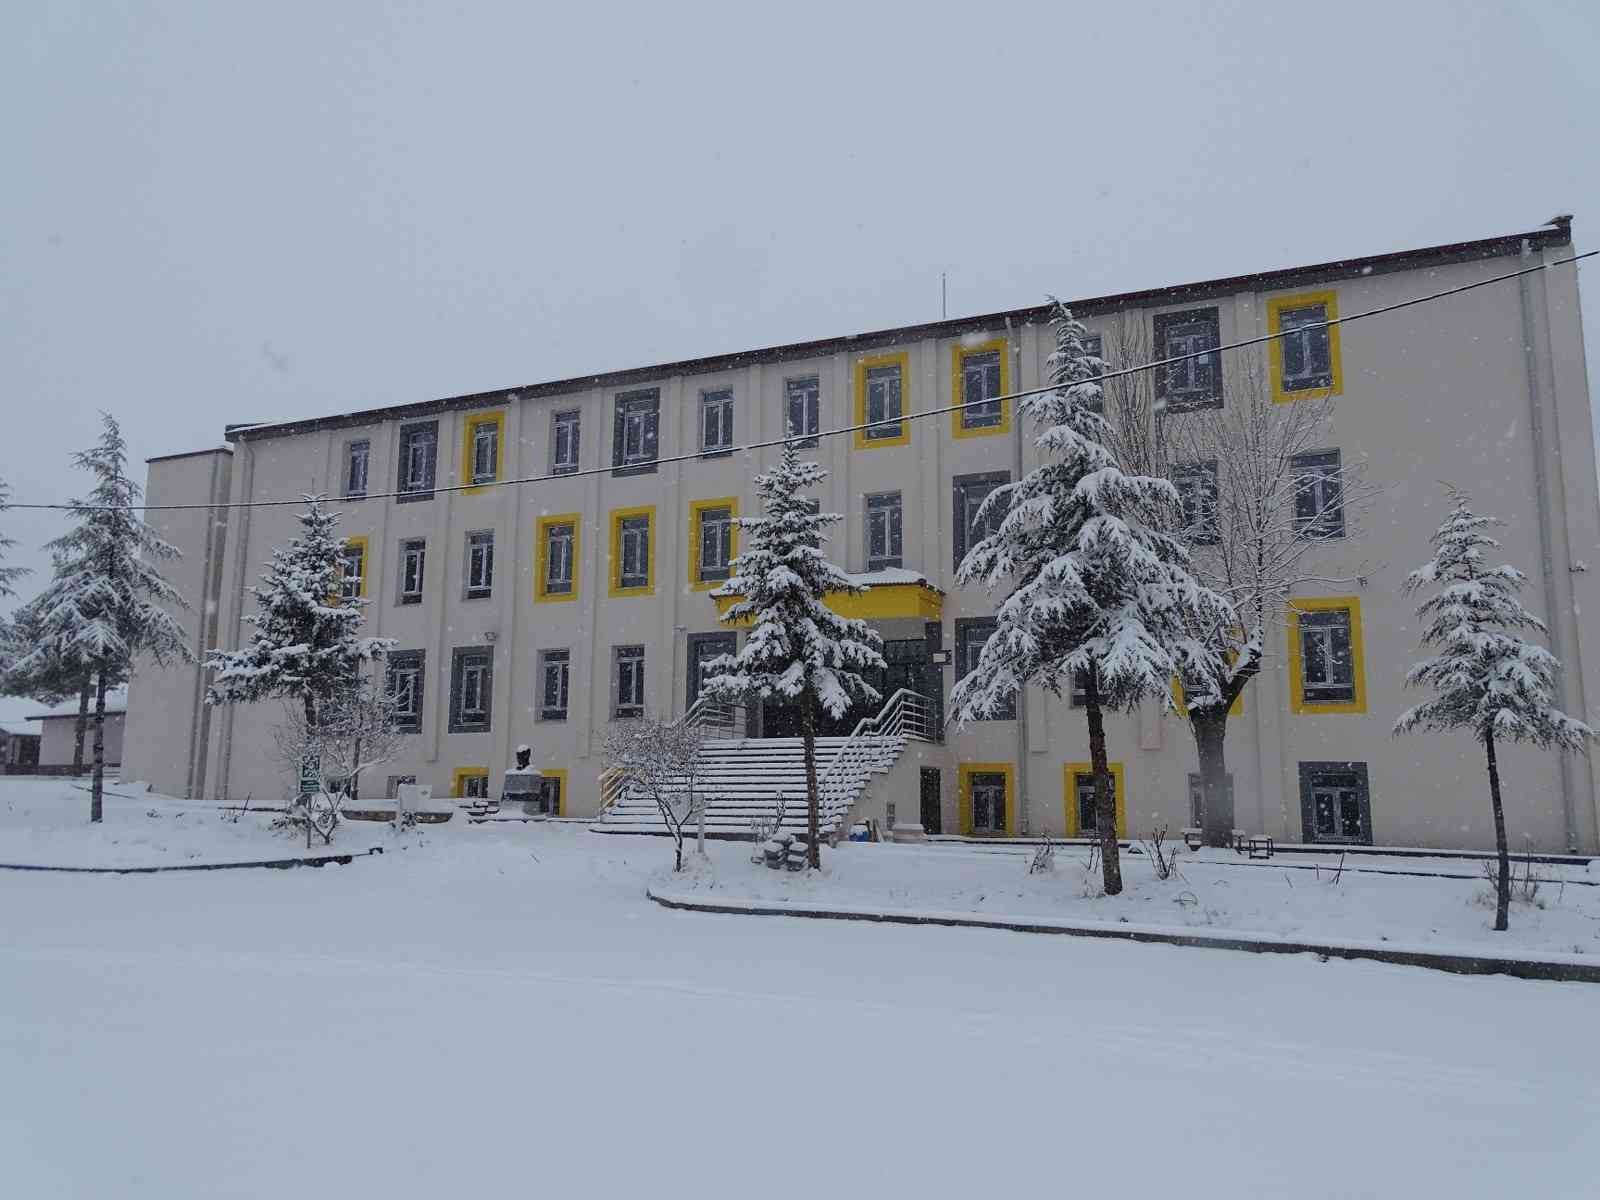 Kütahya’da taşımalı eğitime 1 günlük kar tatili #kutahya